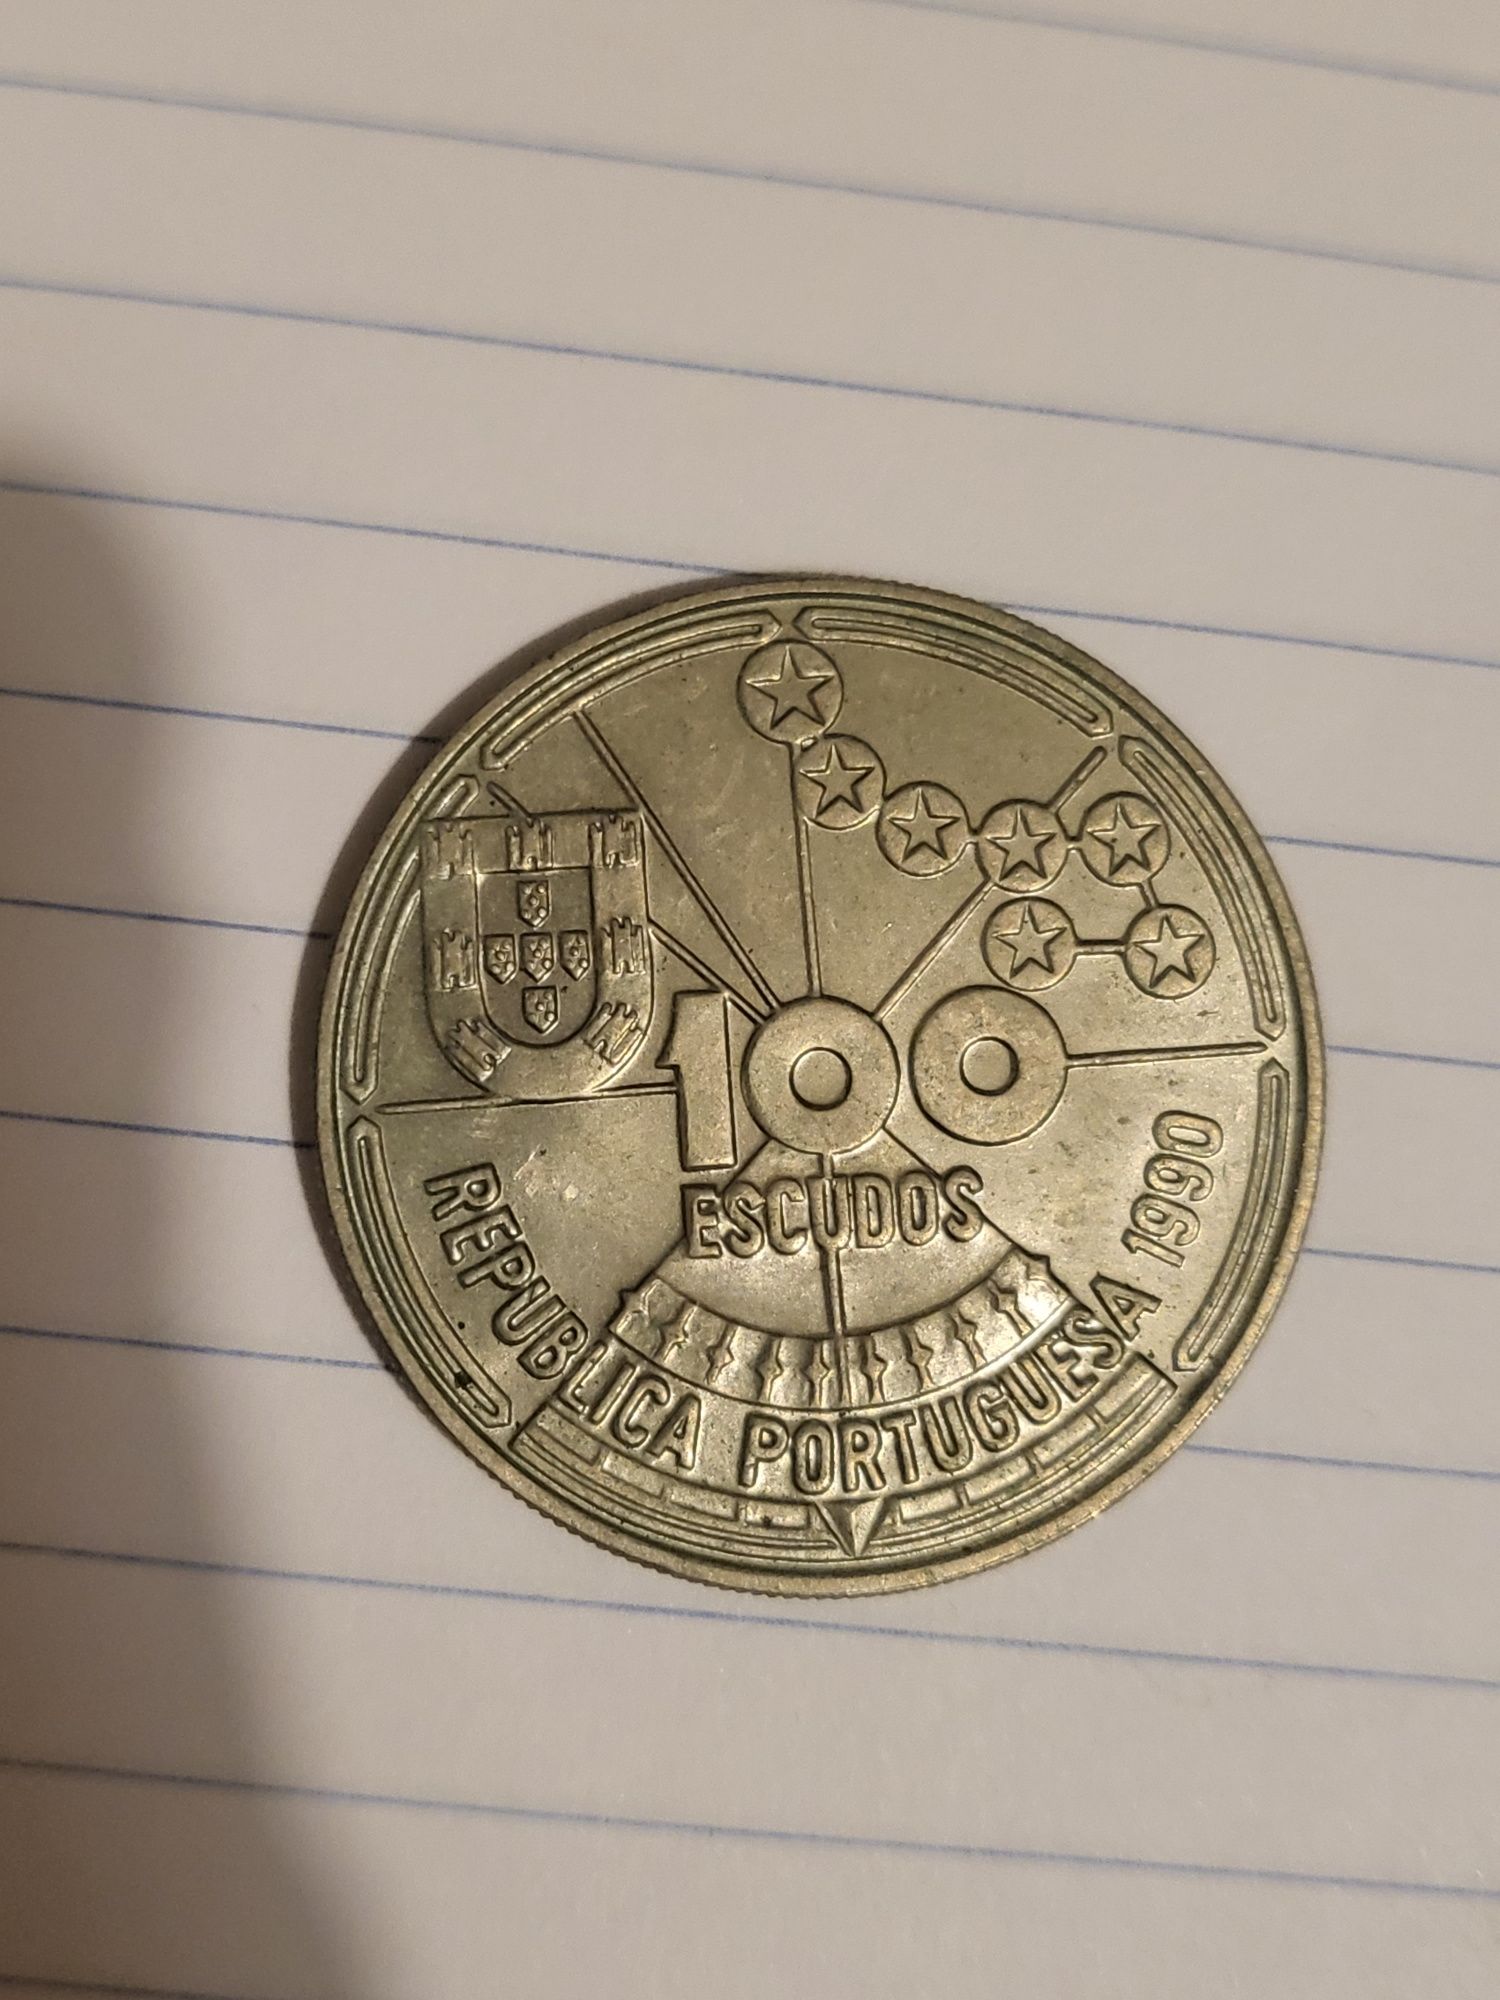 Vendo lote de cerca de 1000 moedas antigas